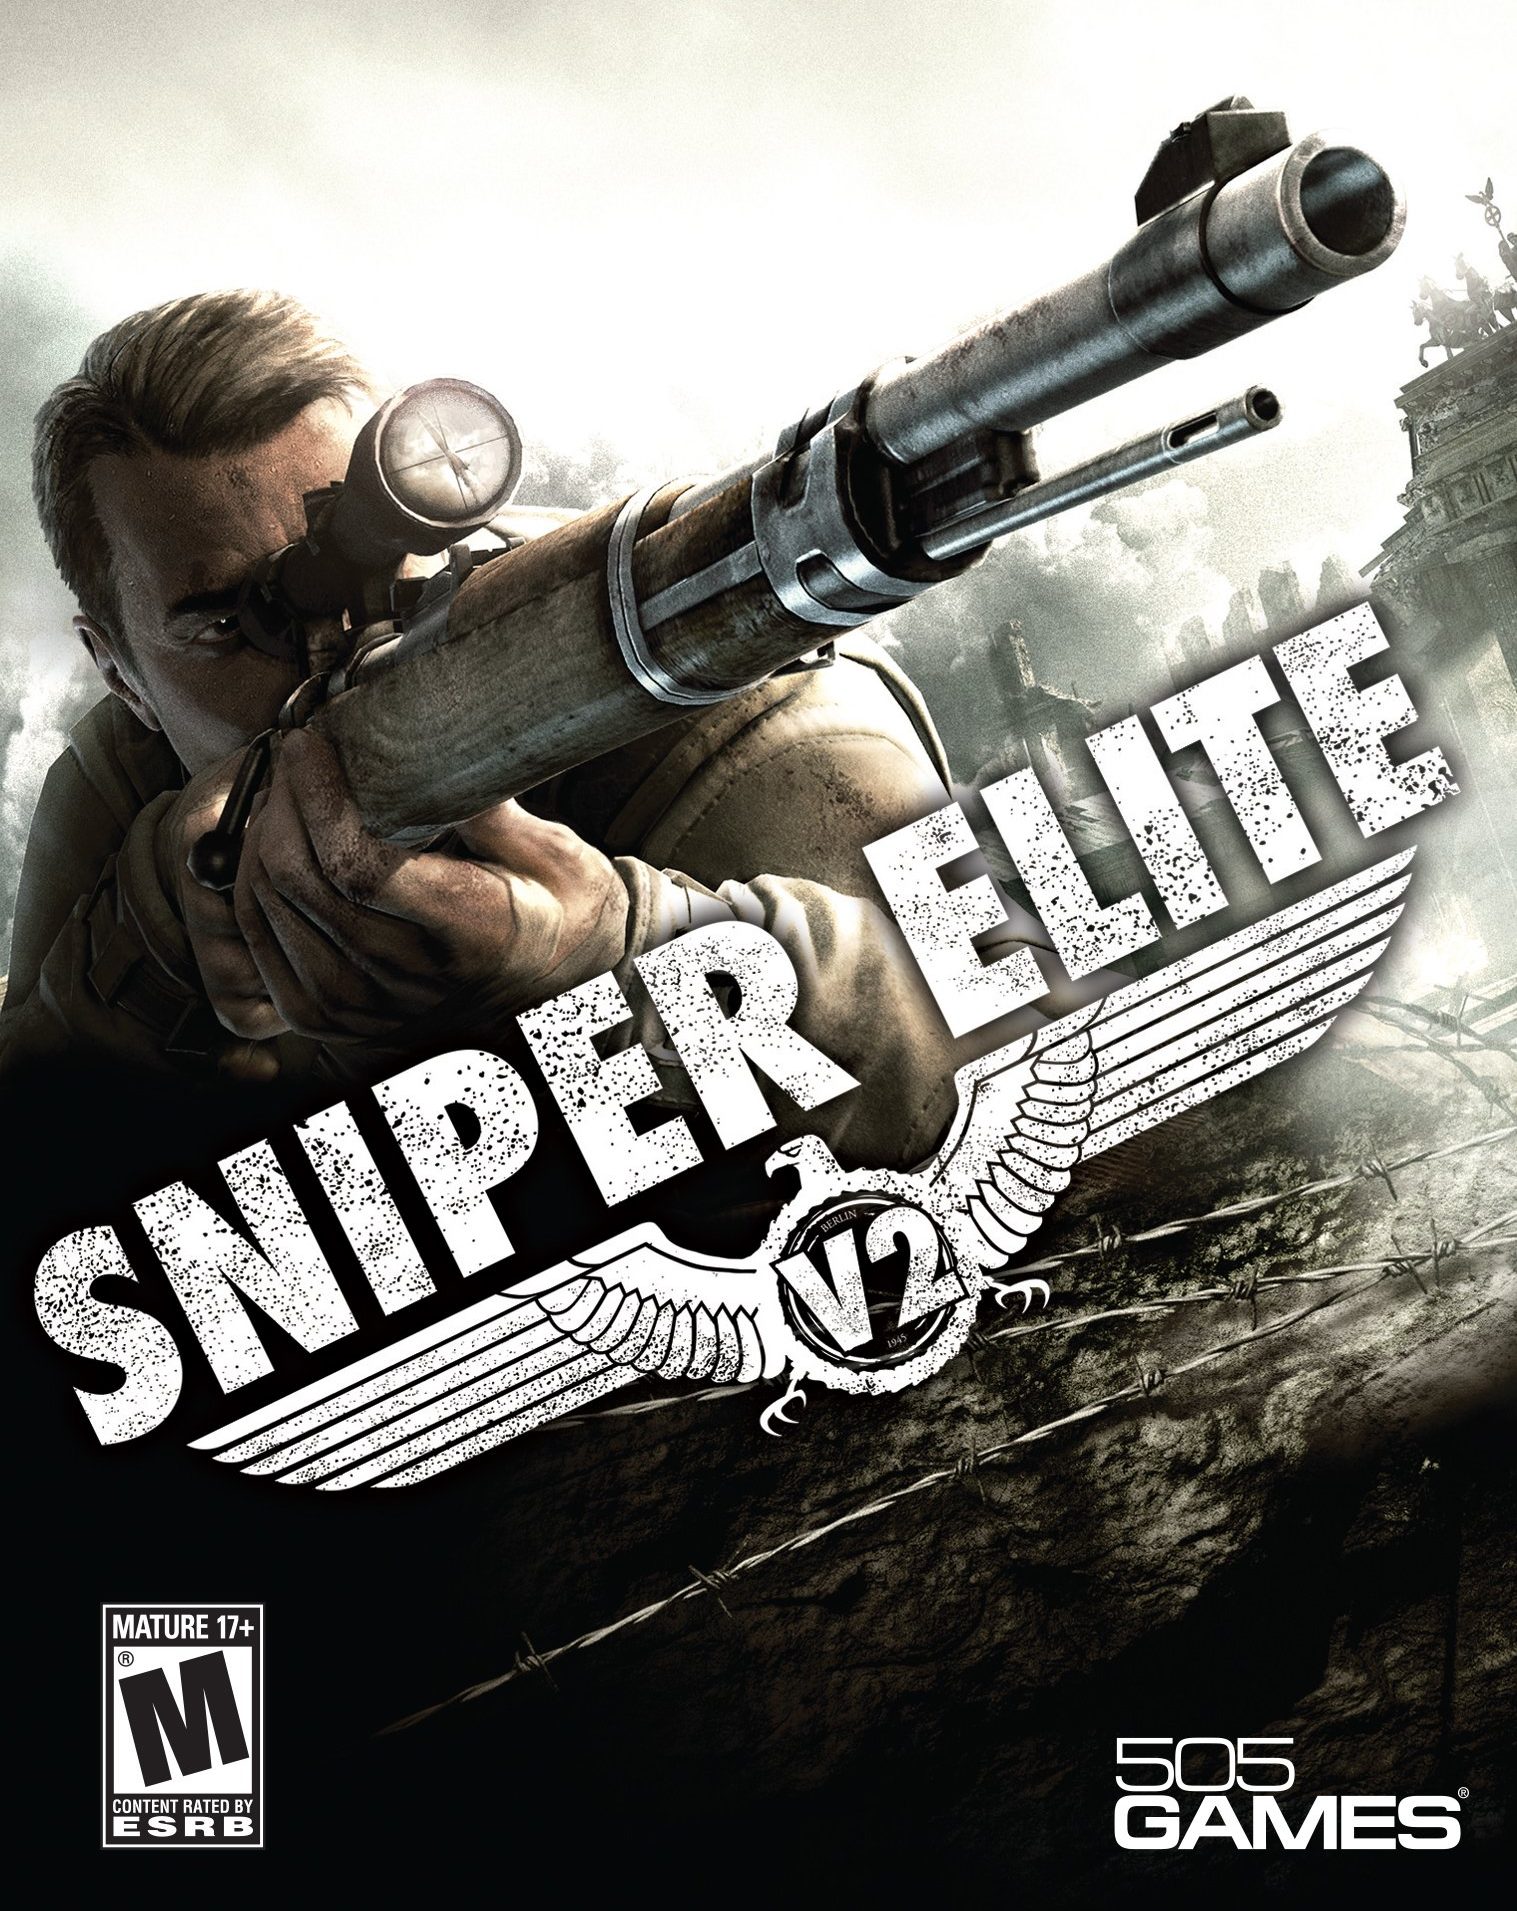 download sniper elite games